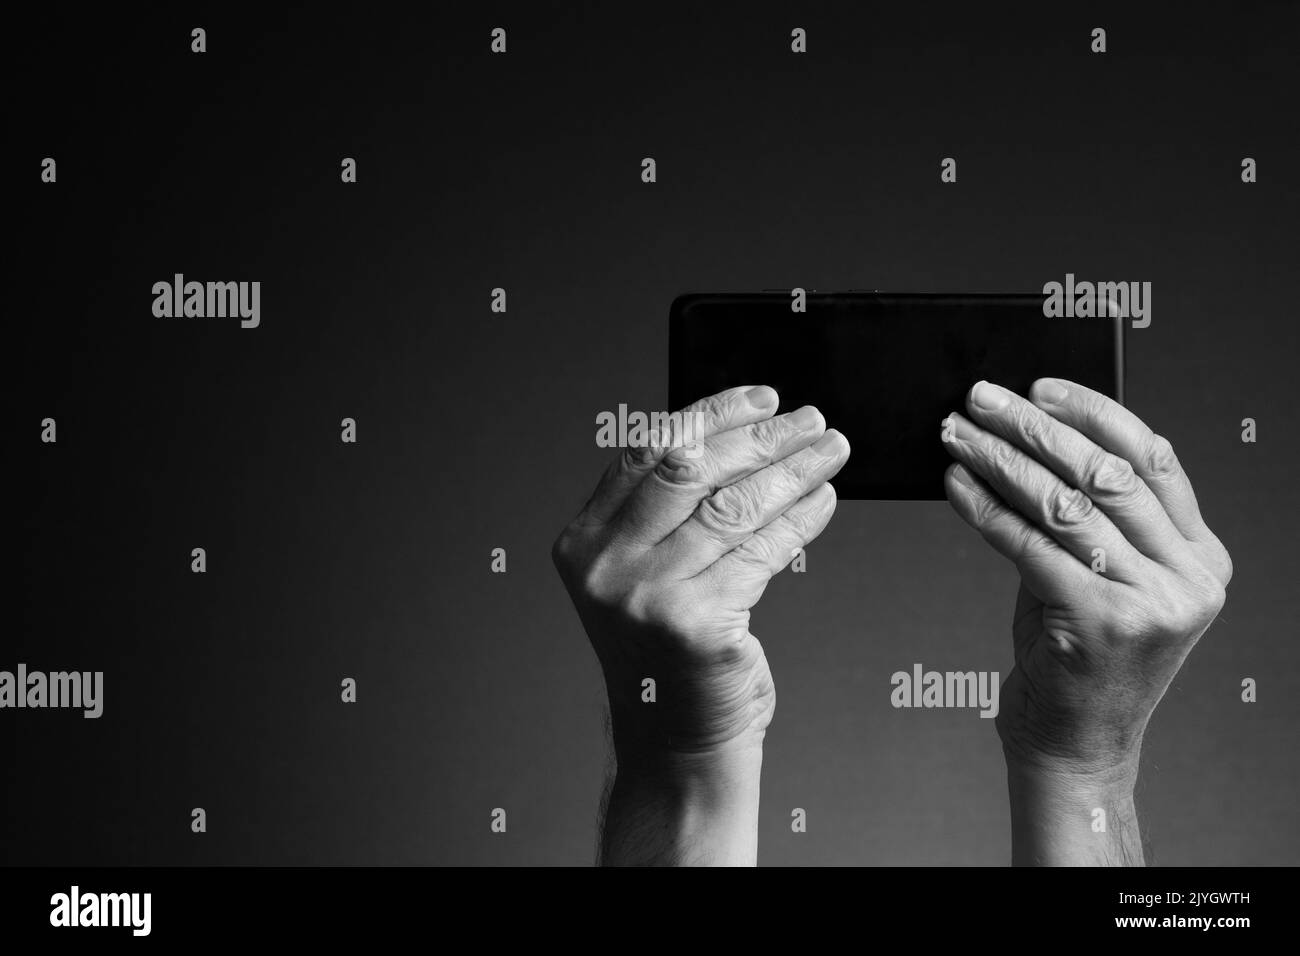 Image en noir et blanc, vue arrière des mains de l'homme tenant le smartphone horizontalement et l'envoi de SMS ou de jeux isolés sur un arrière-plan sombre avec espace de copie Banque D'Images